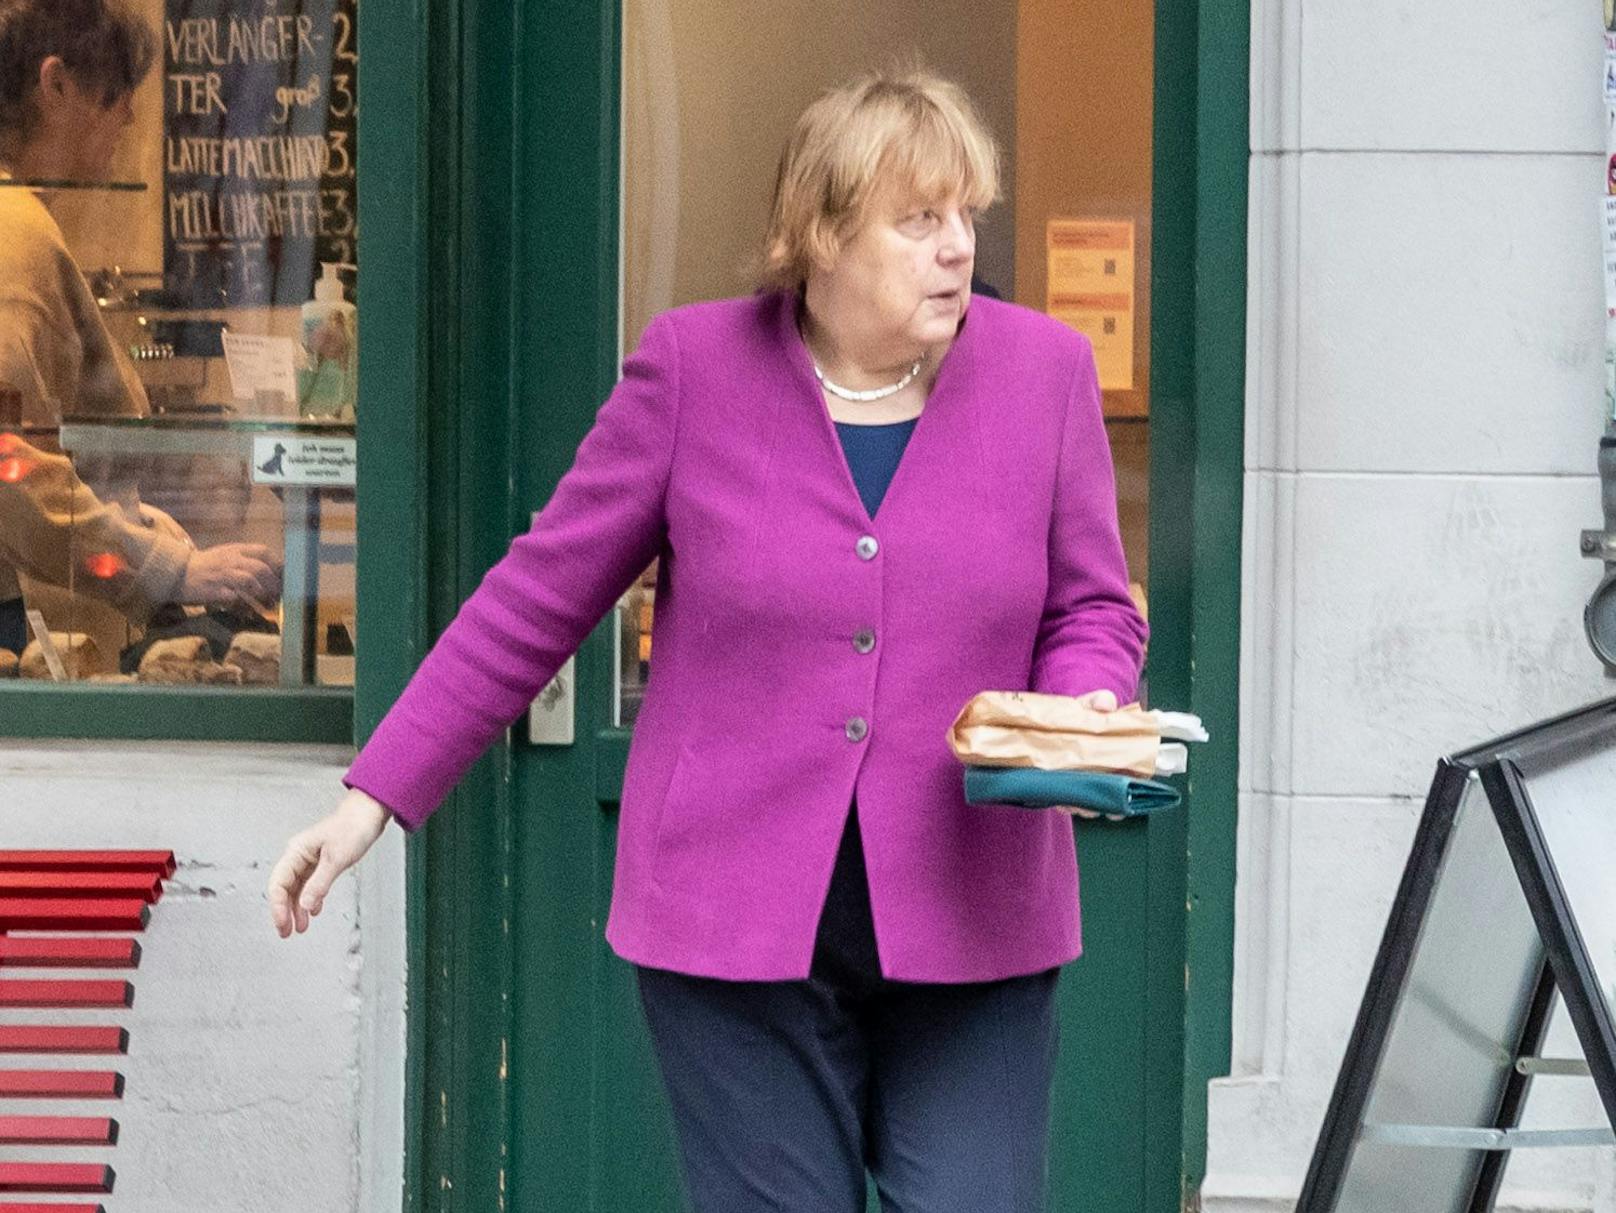 Angela Merkel holt sich auf dem Weg ins Büro bei Wiener Brot in der Tucholskystraße in Berlin-Mitte ihr Frühstück.